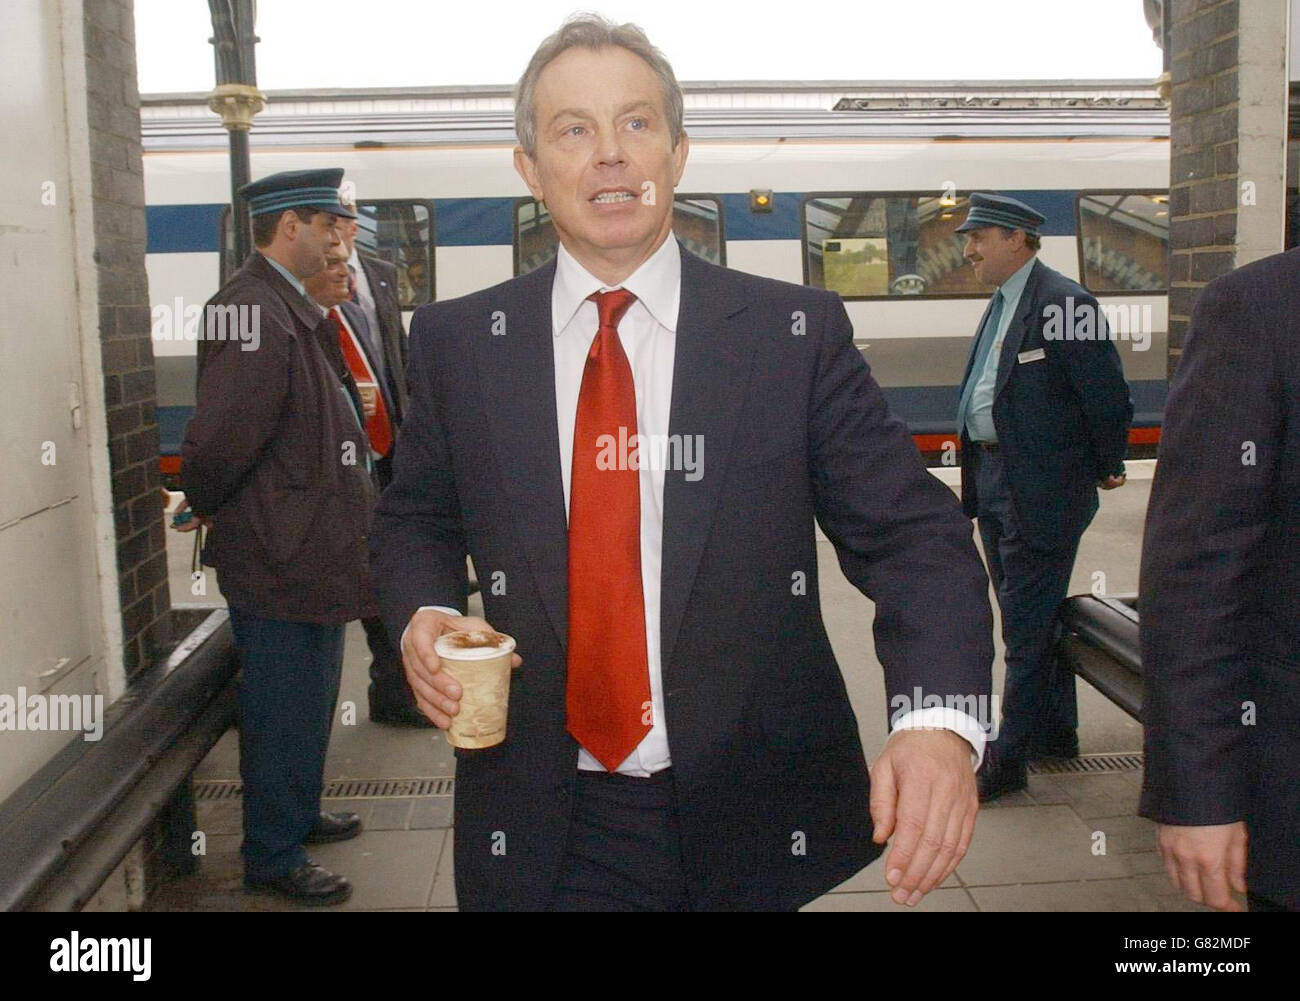 Tony Blair llega a la estación de Wellingborough con una taza de café que compró en el buffet de la estación. Foto de stock